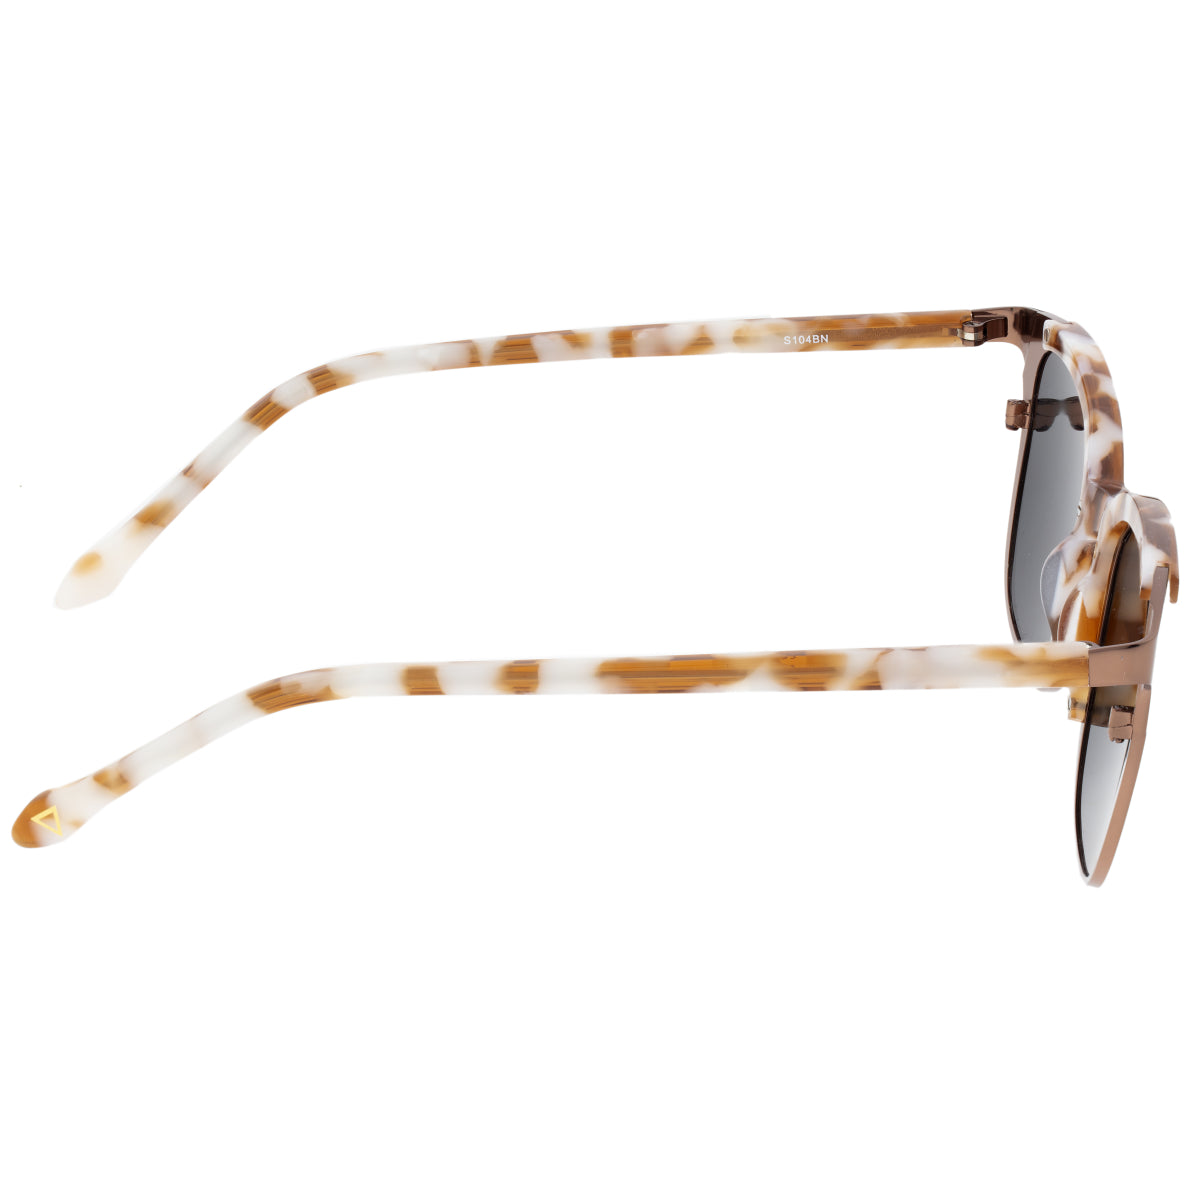 Sixty One Kewarra Polarized Sunglasses - Brown/Black - SIXS104BN